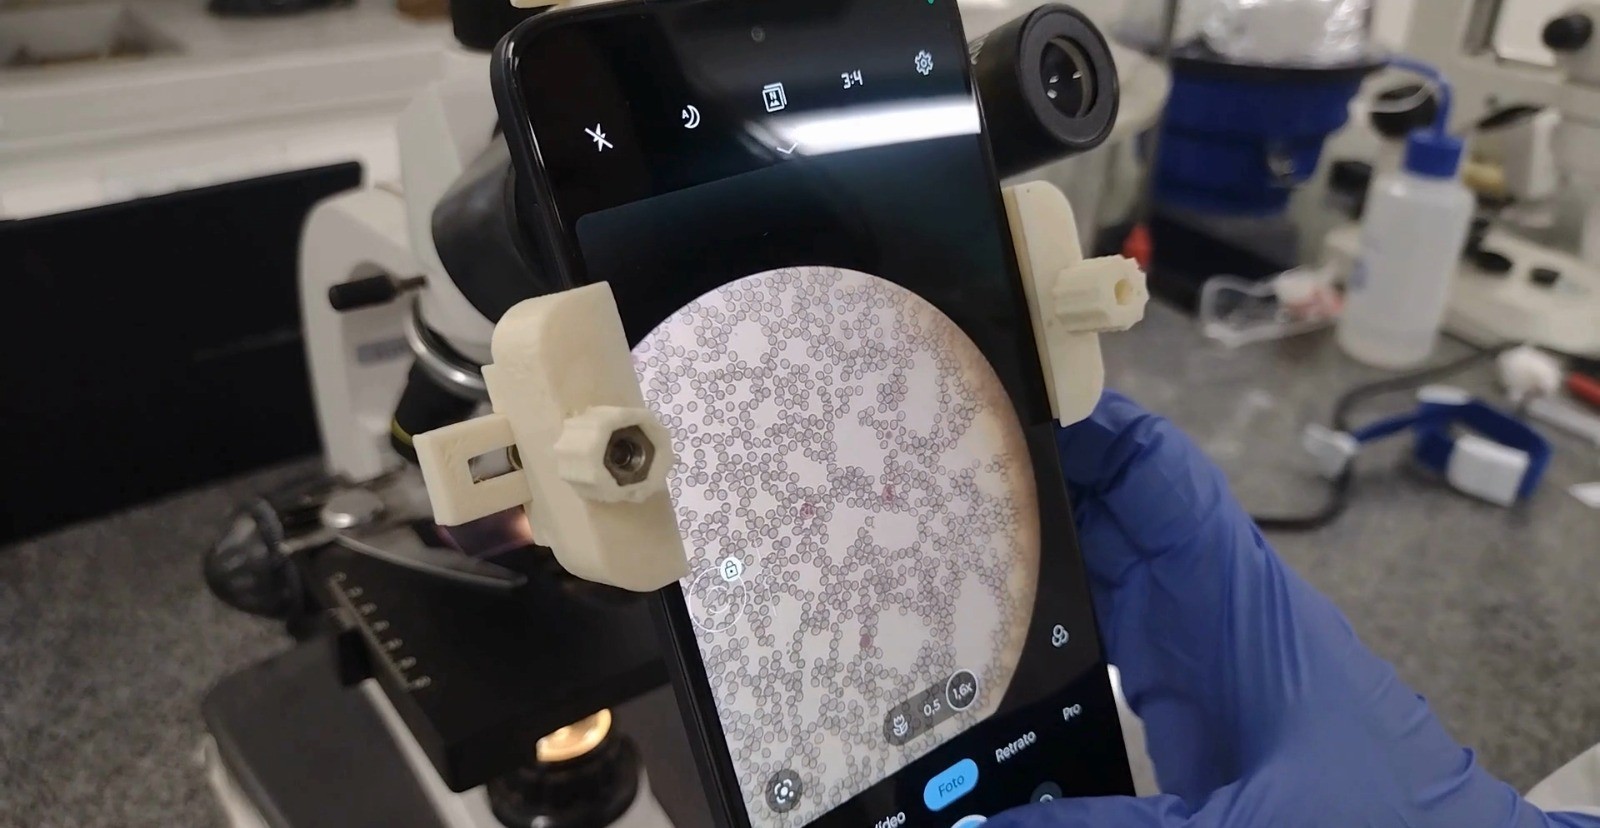 Método criado na Unicamp faz exame de sangue em 5 segundos usando smartphone e inteligência artificial